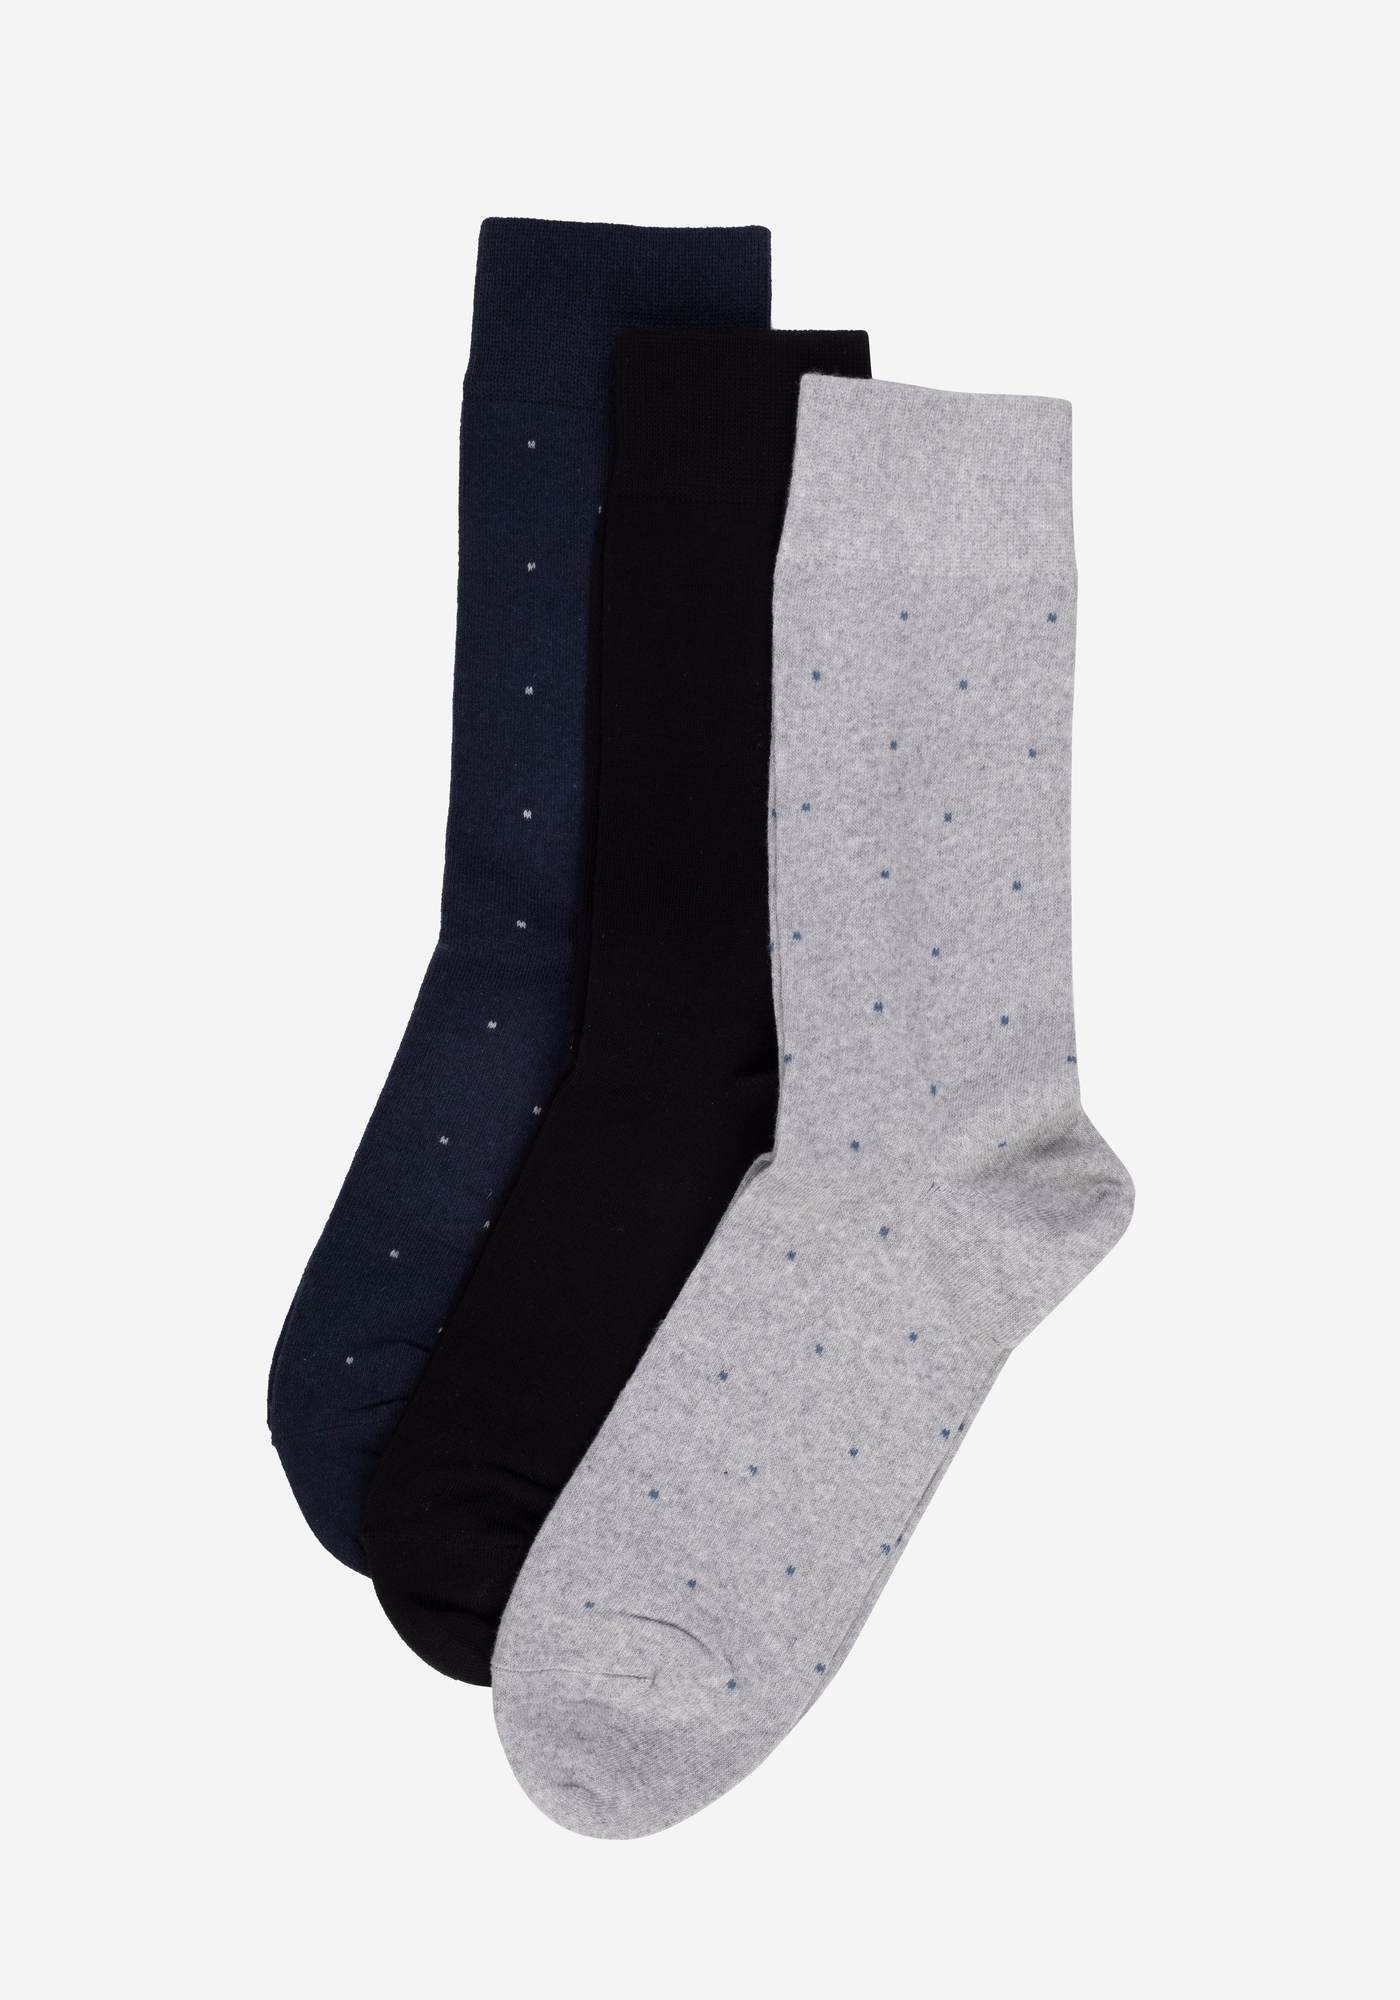 P3*1-410-6 / 3 Long Socks Pack